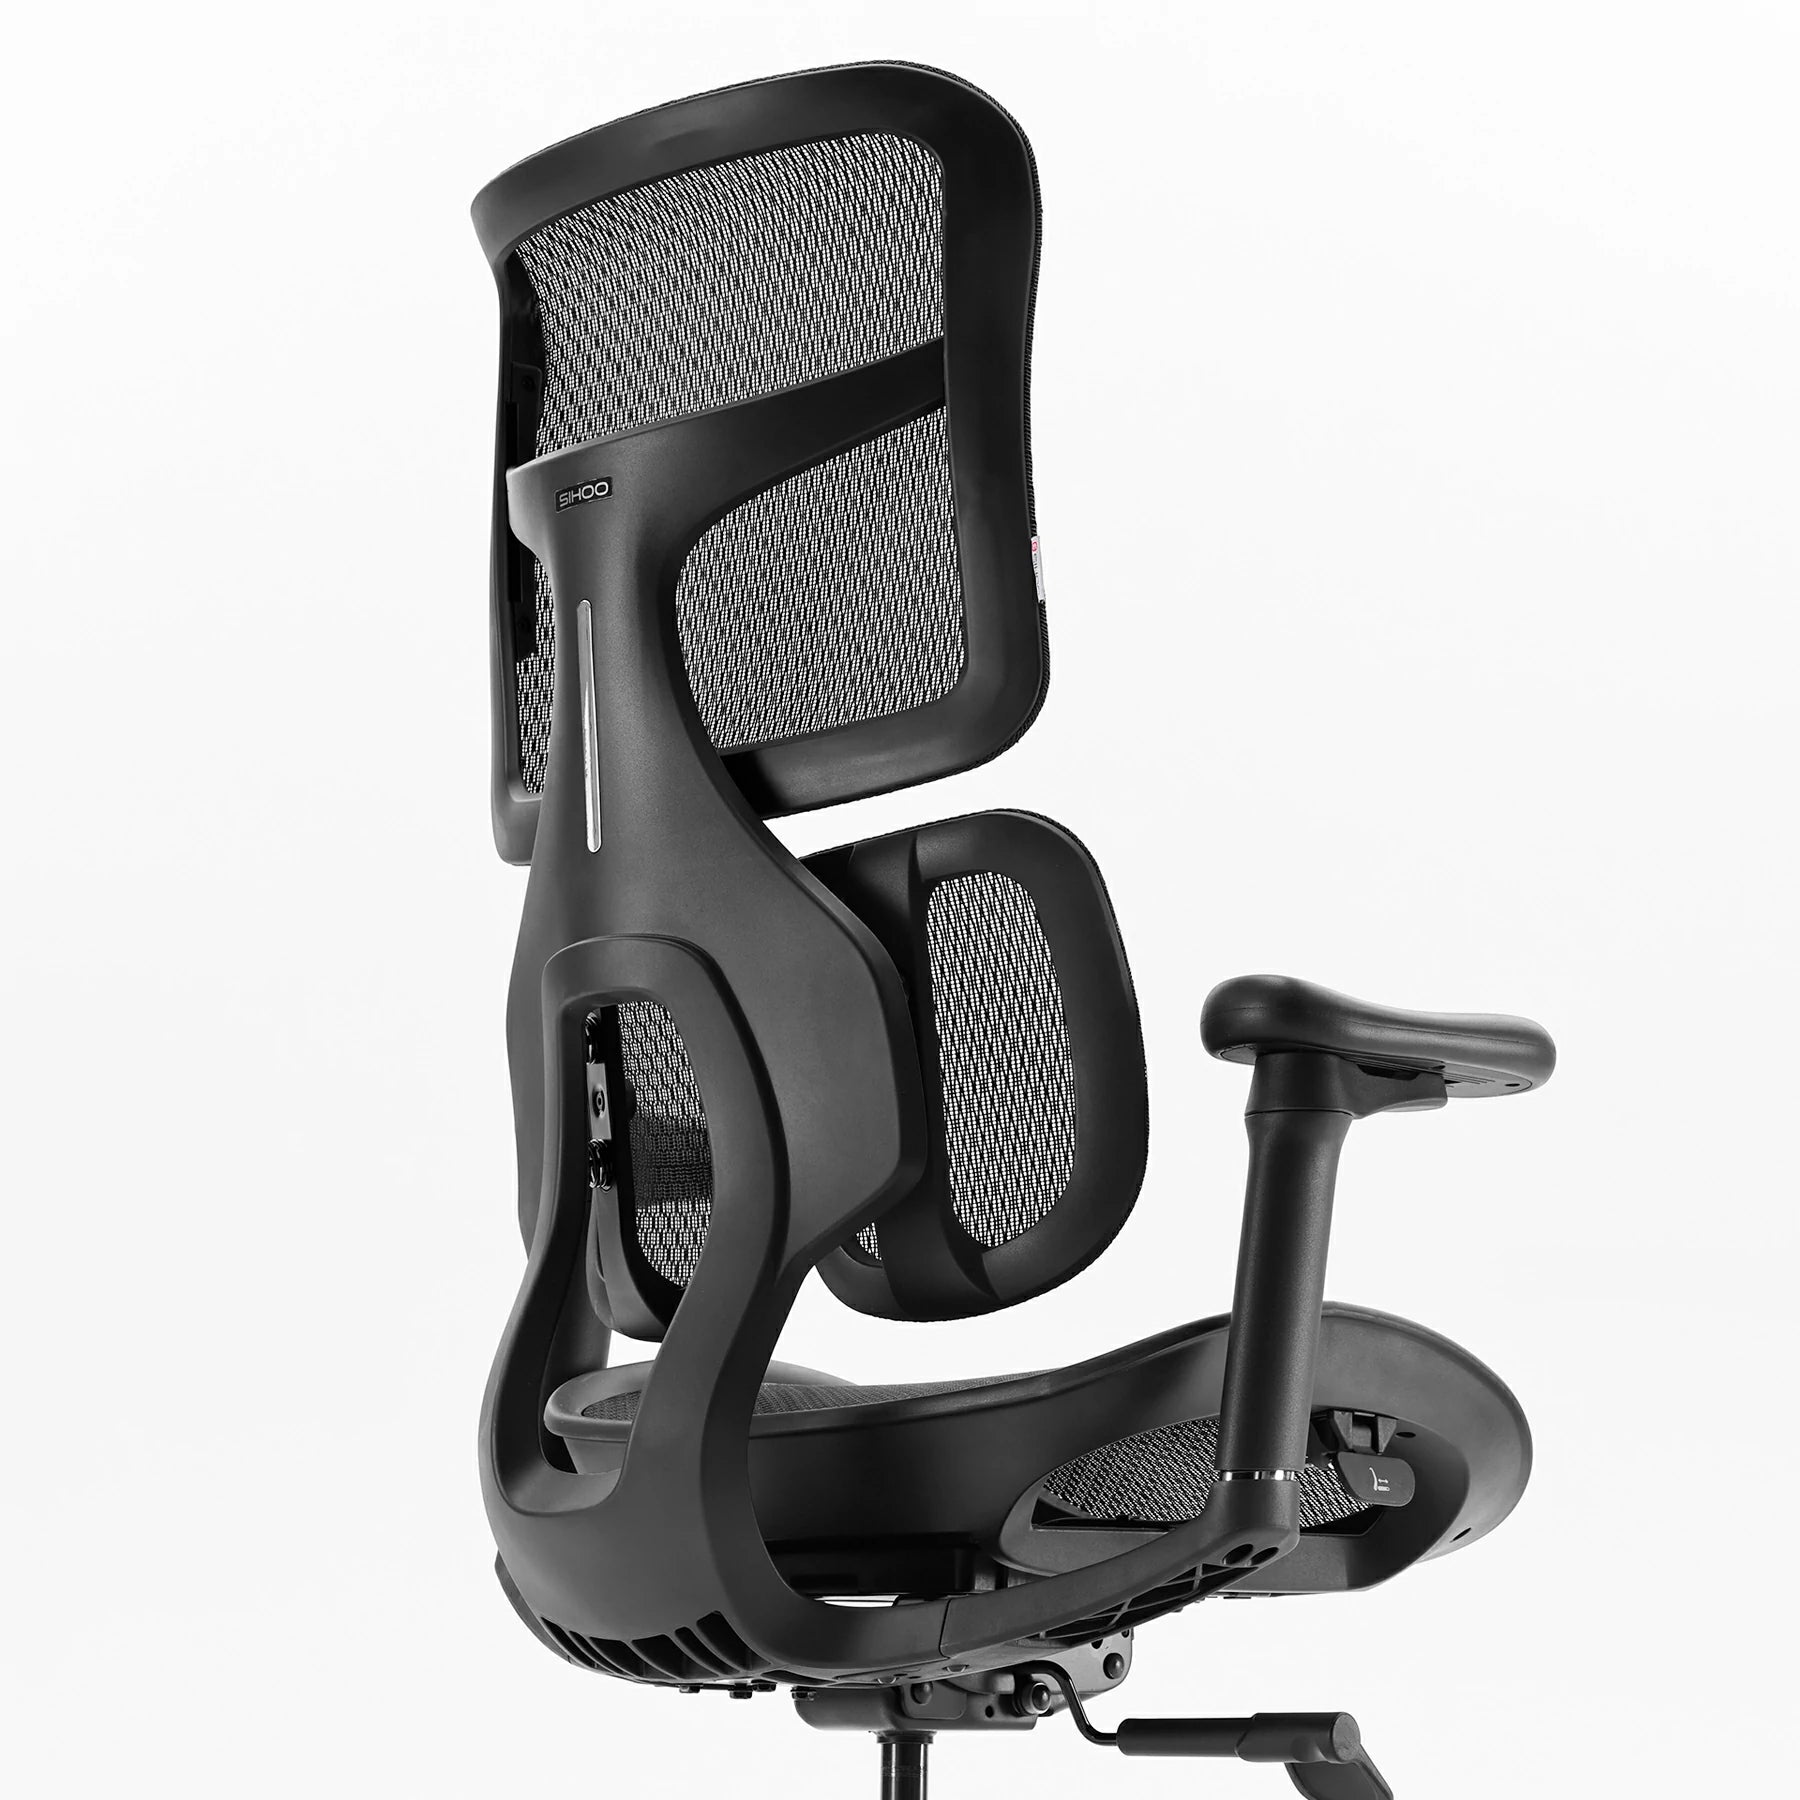 <tc>(nouveau) Sihoo Doro S100 chaise de bureau ergonomique avec Double Support lombaire dynamique</tc>